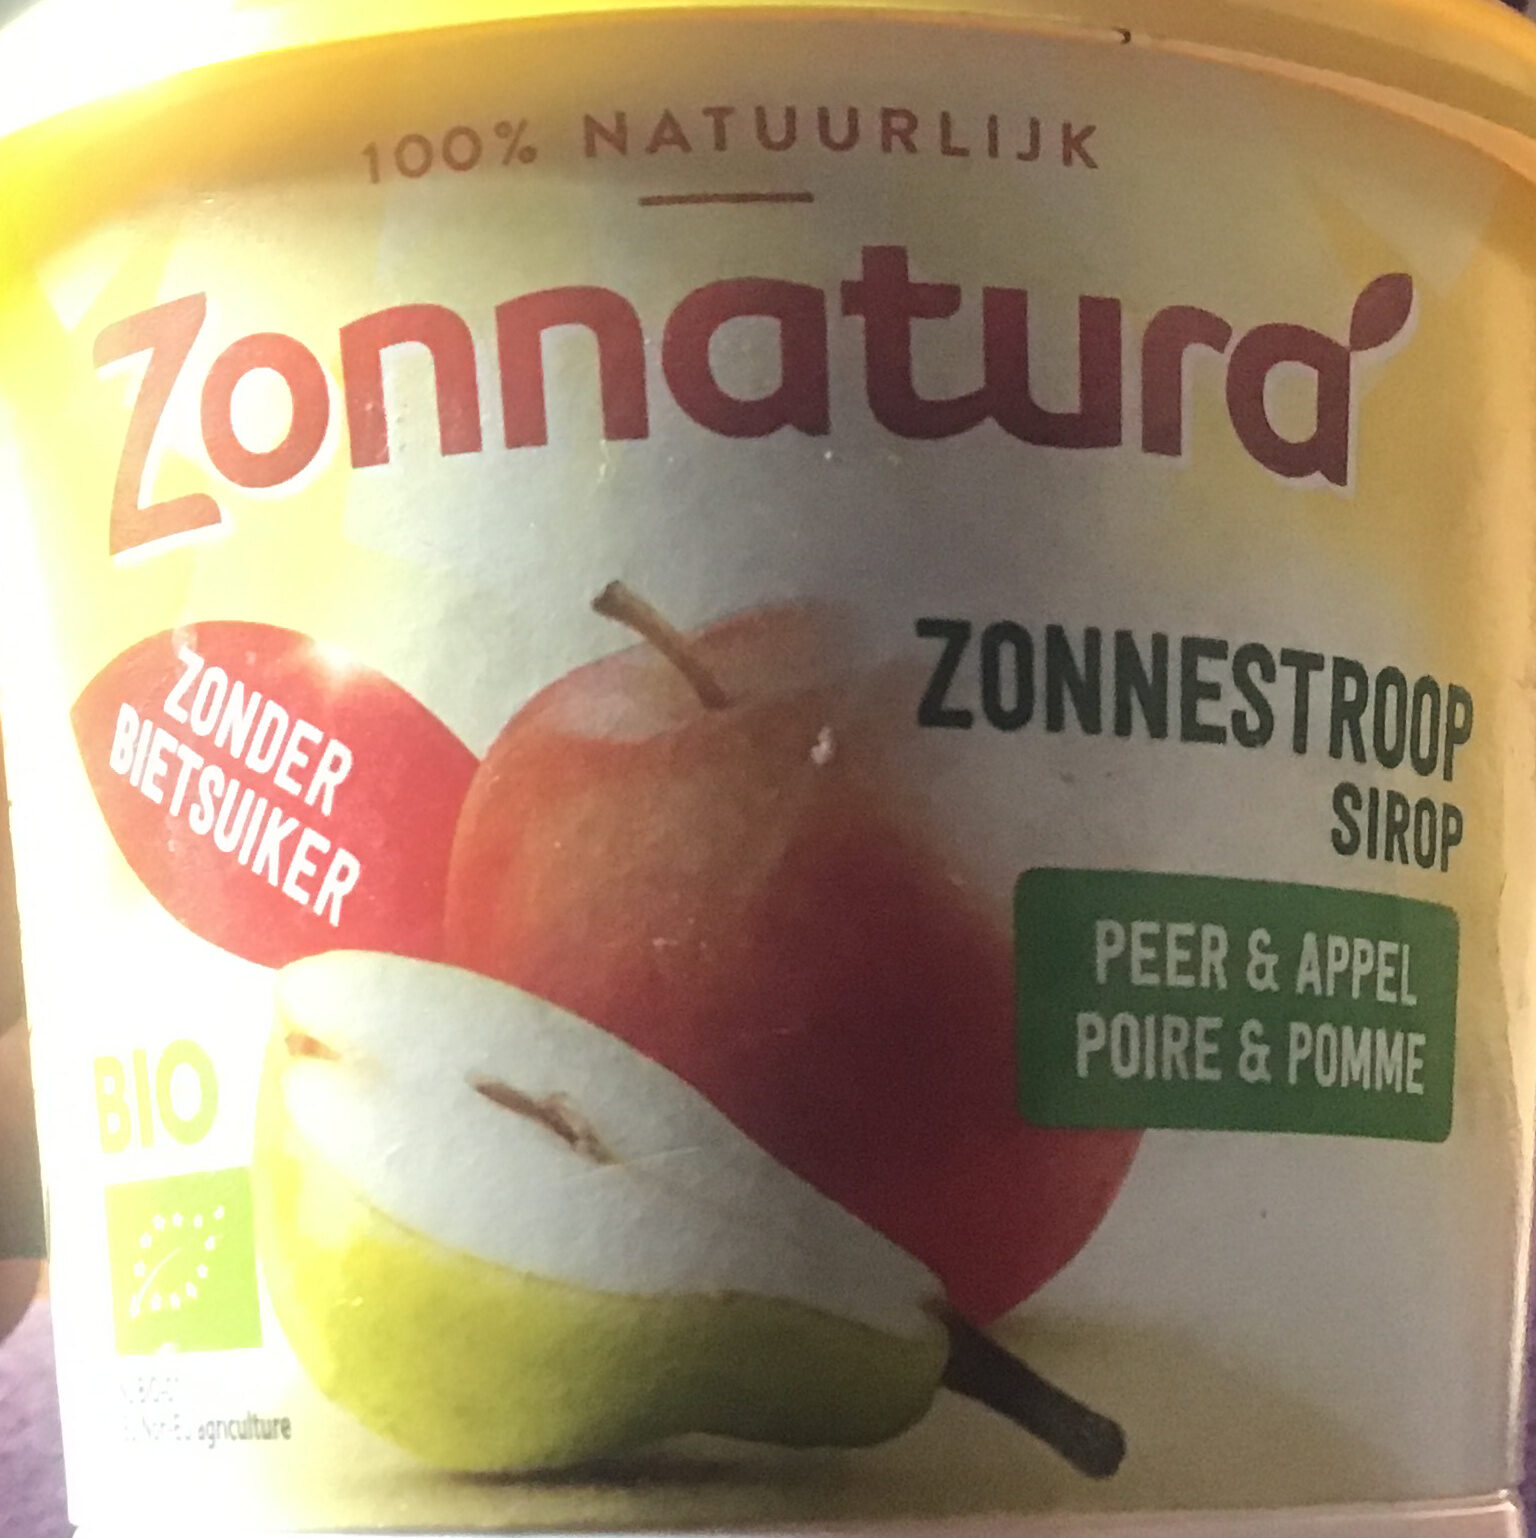 Zonnestroop peer & appel - Product - nl